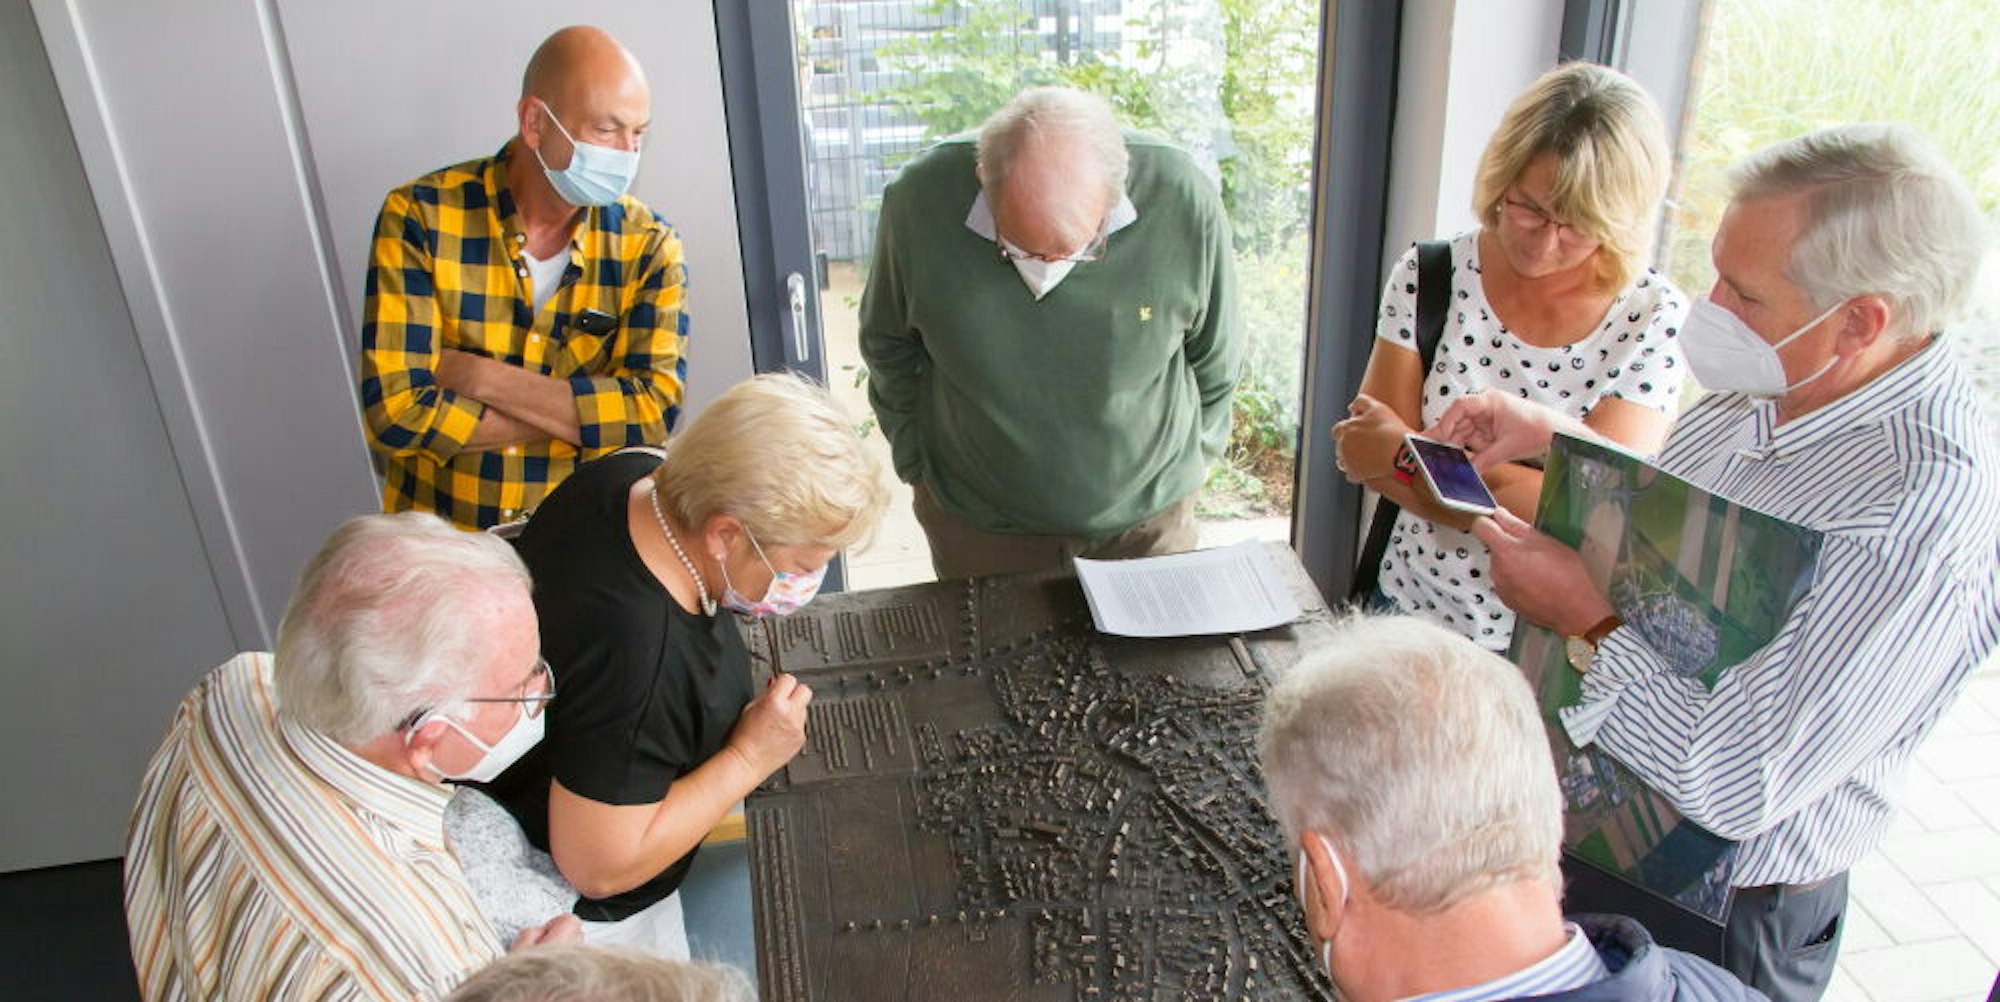 RWE schenkte der Manheimer Dorfgemeinschaft ein Bronzemodell ihres Ortes.